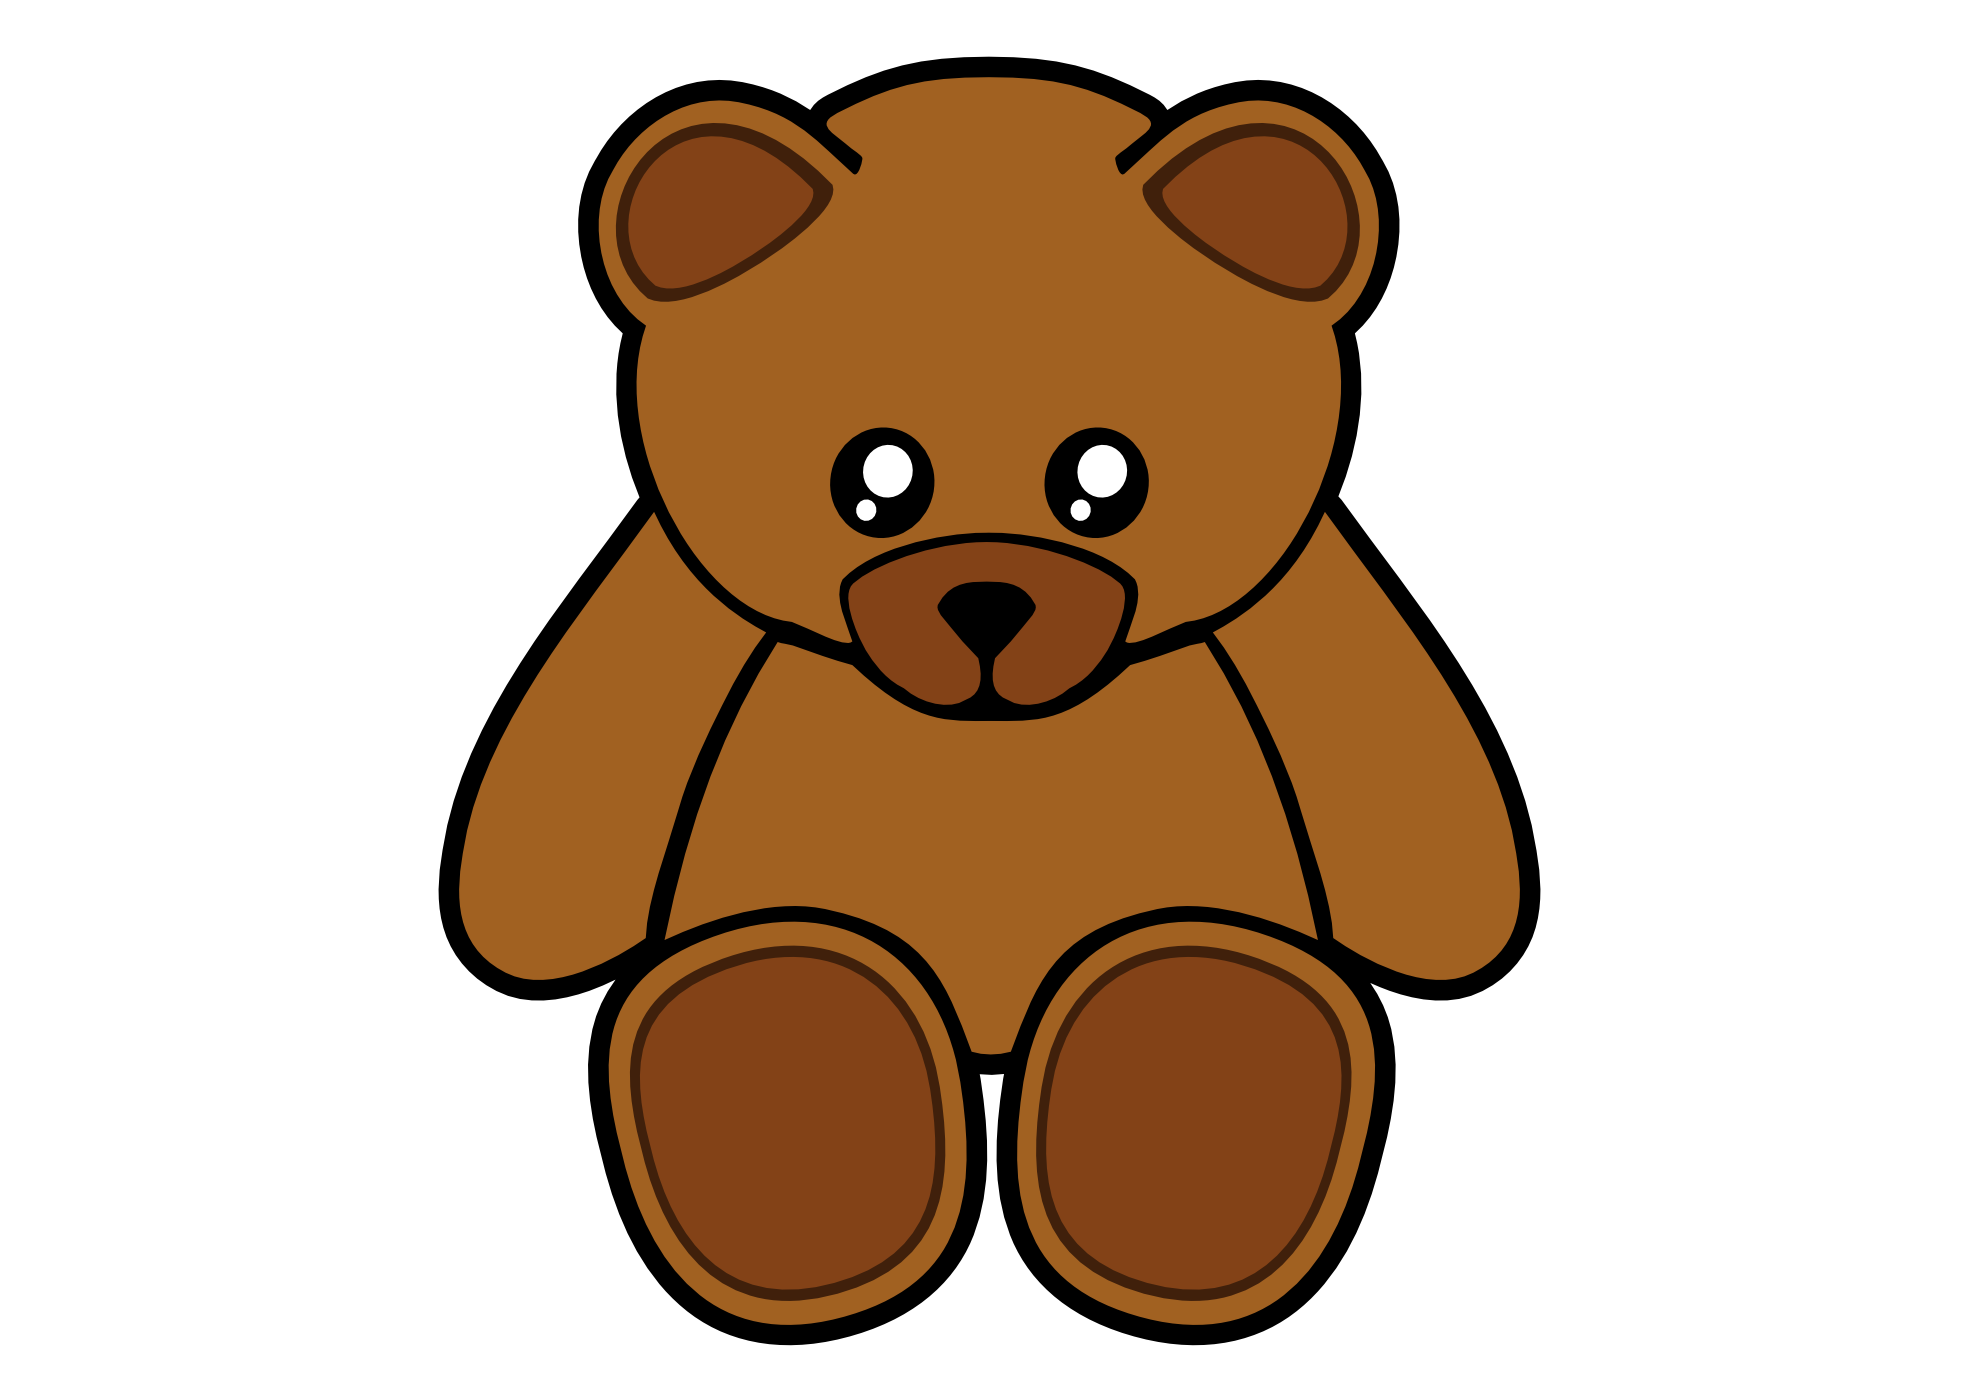 Bear clip art teddy bears paradise 3 image #10541